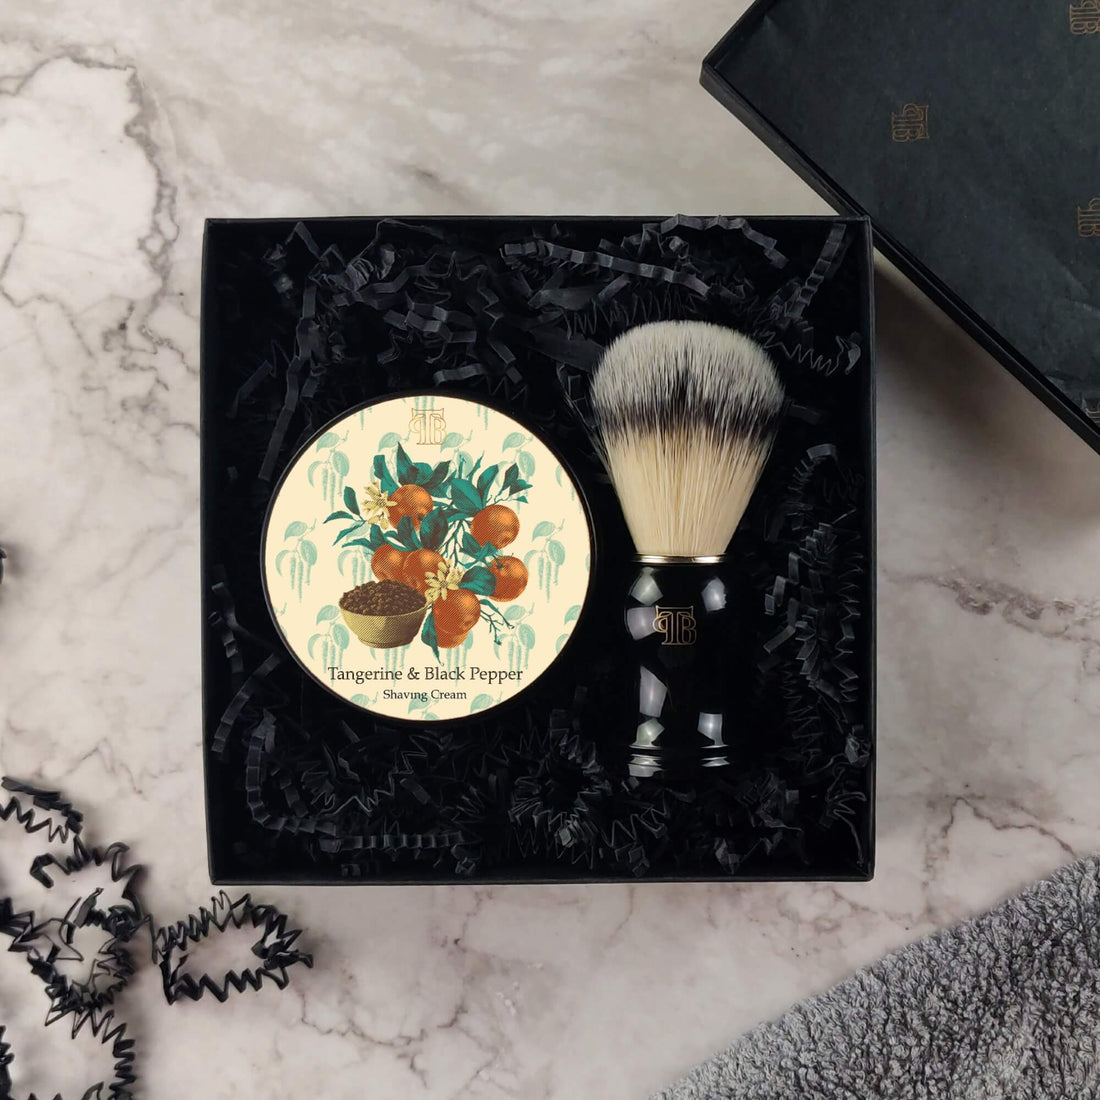 Shaving Cream And Brush Gift Set